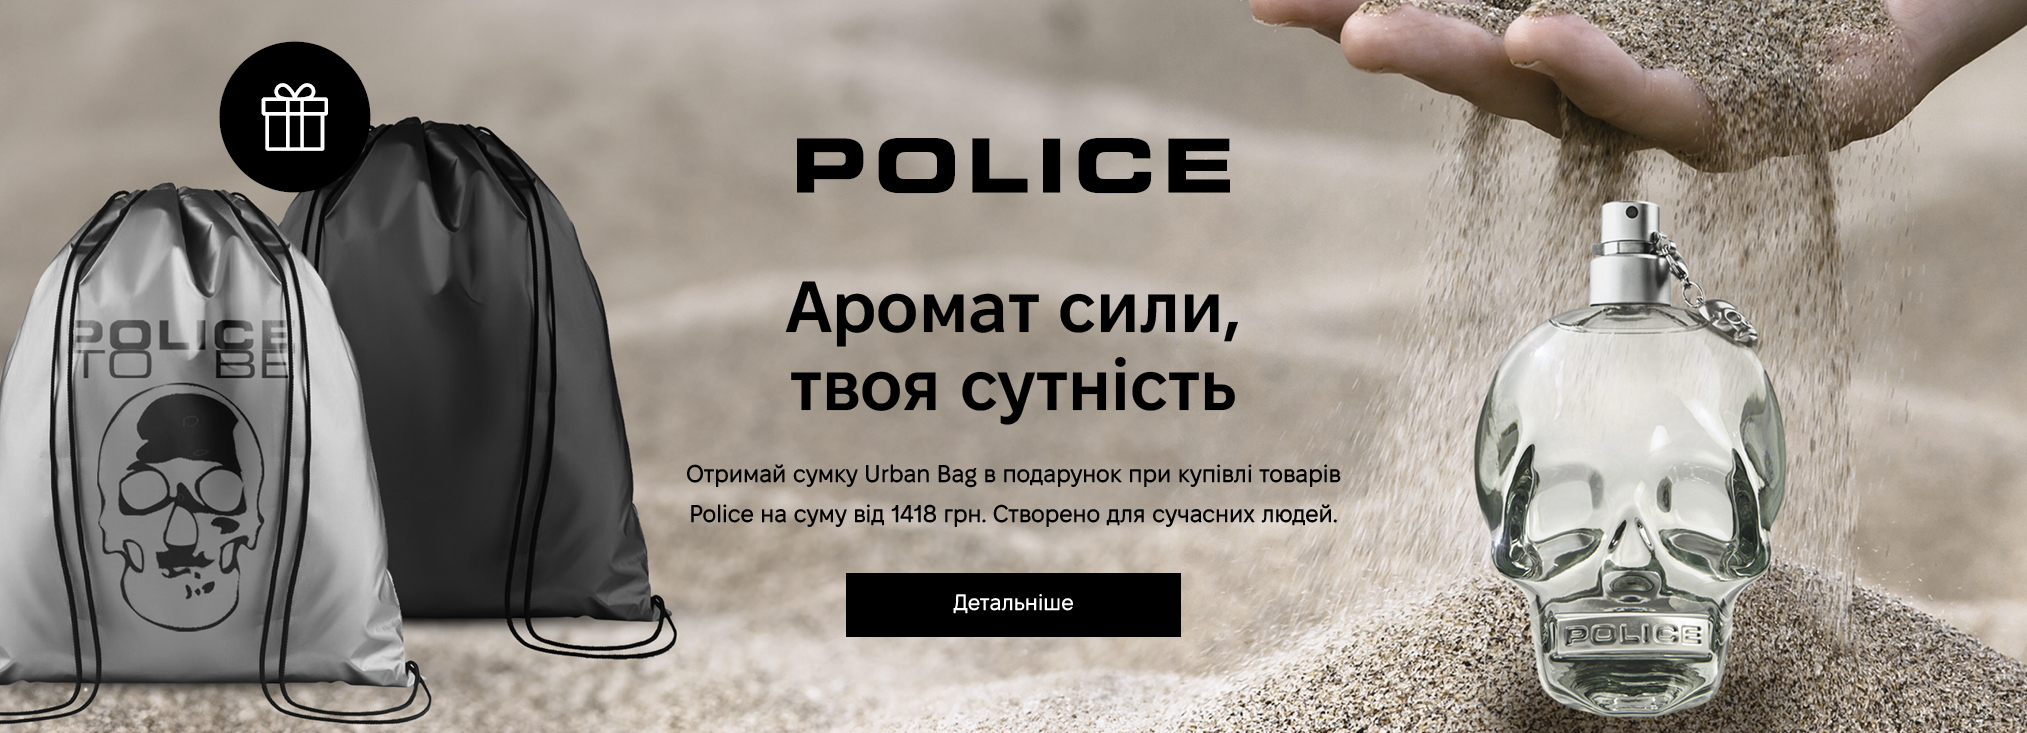 Police_3